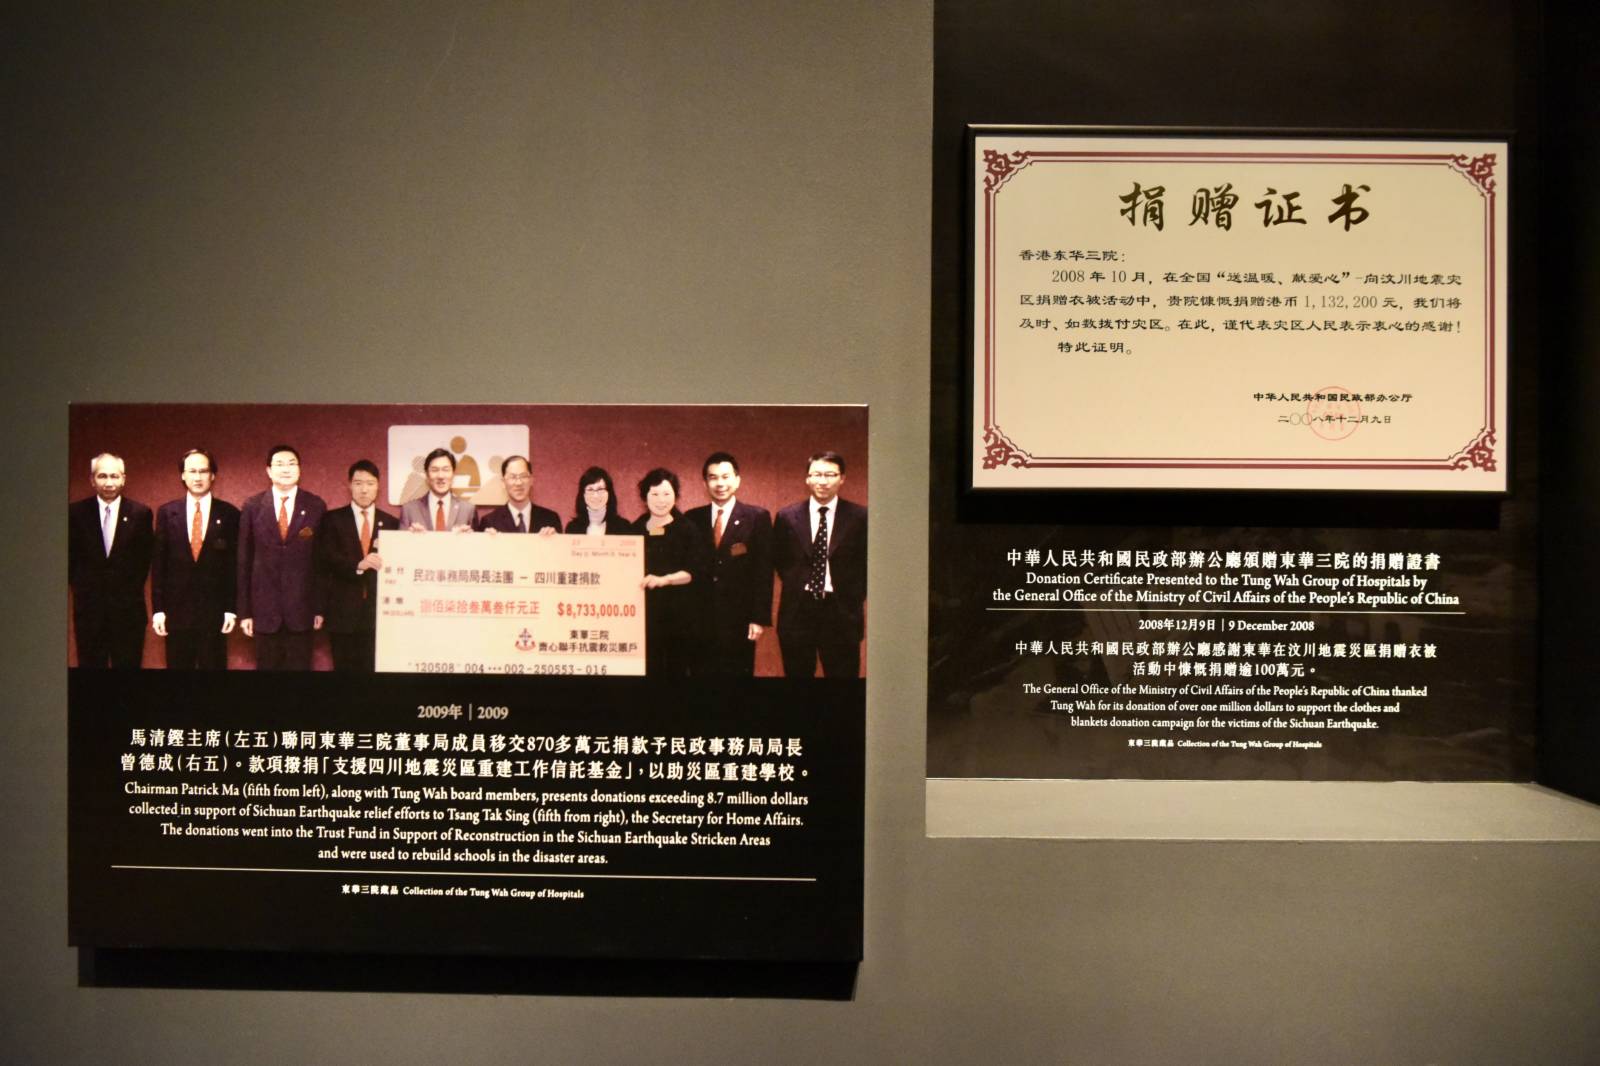 10月27日，由香港康樂及文化事務署和東華三院聯合主辦的「善道同行—東華三院籌募文化與社會發展」展覽於香港文化博物館舉行。是次展覽透過逾200項珍貴文物和豐富歷史圖片，讓觀眾從東華三院籌募文化的角度，了解香港社會發展，並重溫承載在當中的集體回憶。圖為2008年香港東華三院捐贈逾100萬港元為內地汶川地震災區「送溫暖、獻愛心」。